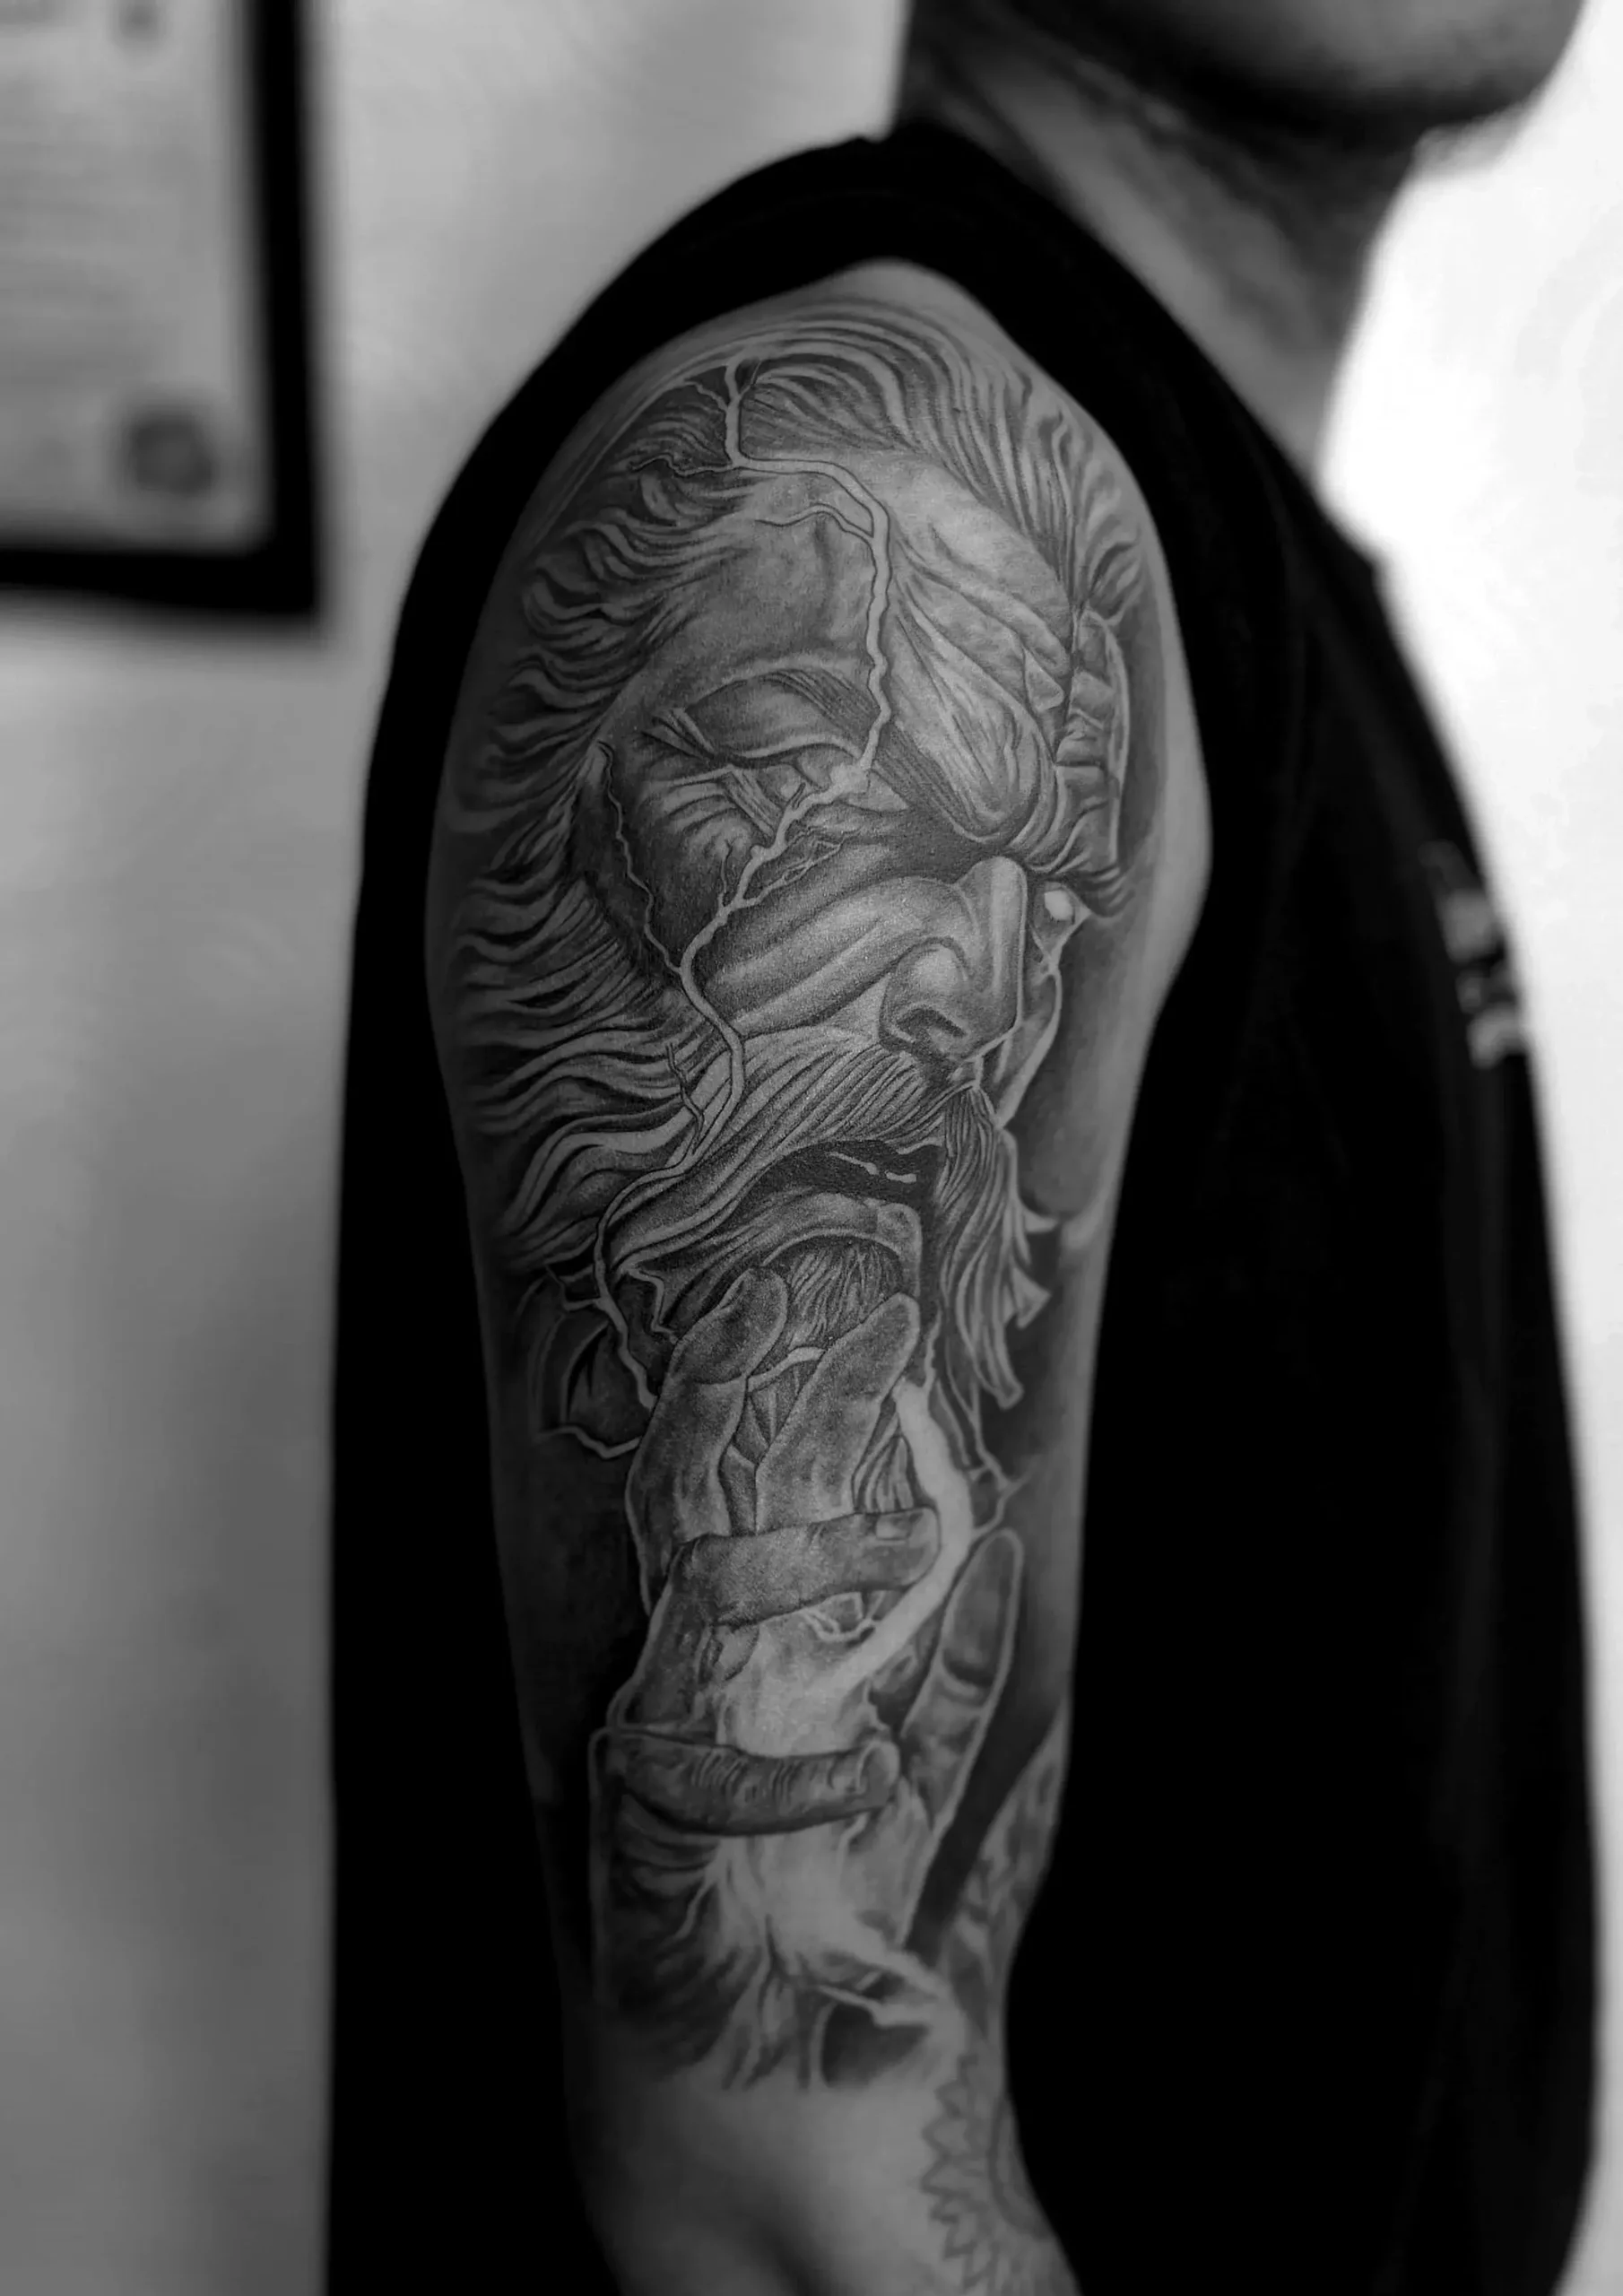 ADDICTED TATTOO STUDIO - Tattoo Artist - addicted tattoo studio | LinkedIn